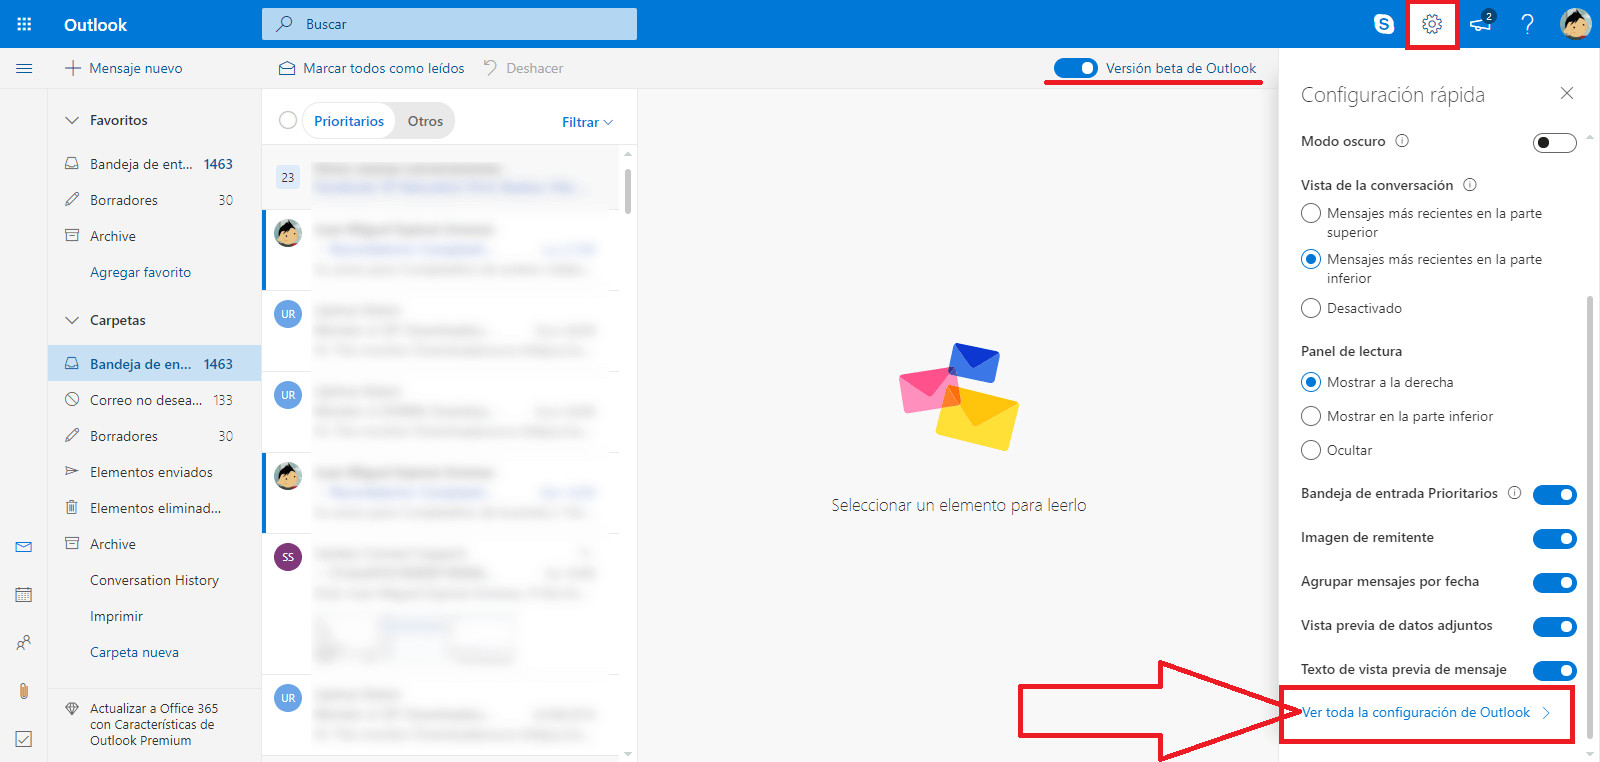 como descargar todos los datos de tu cuenta de Outlook.com